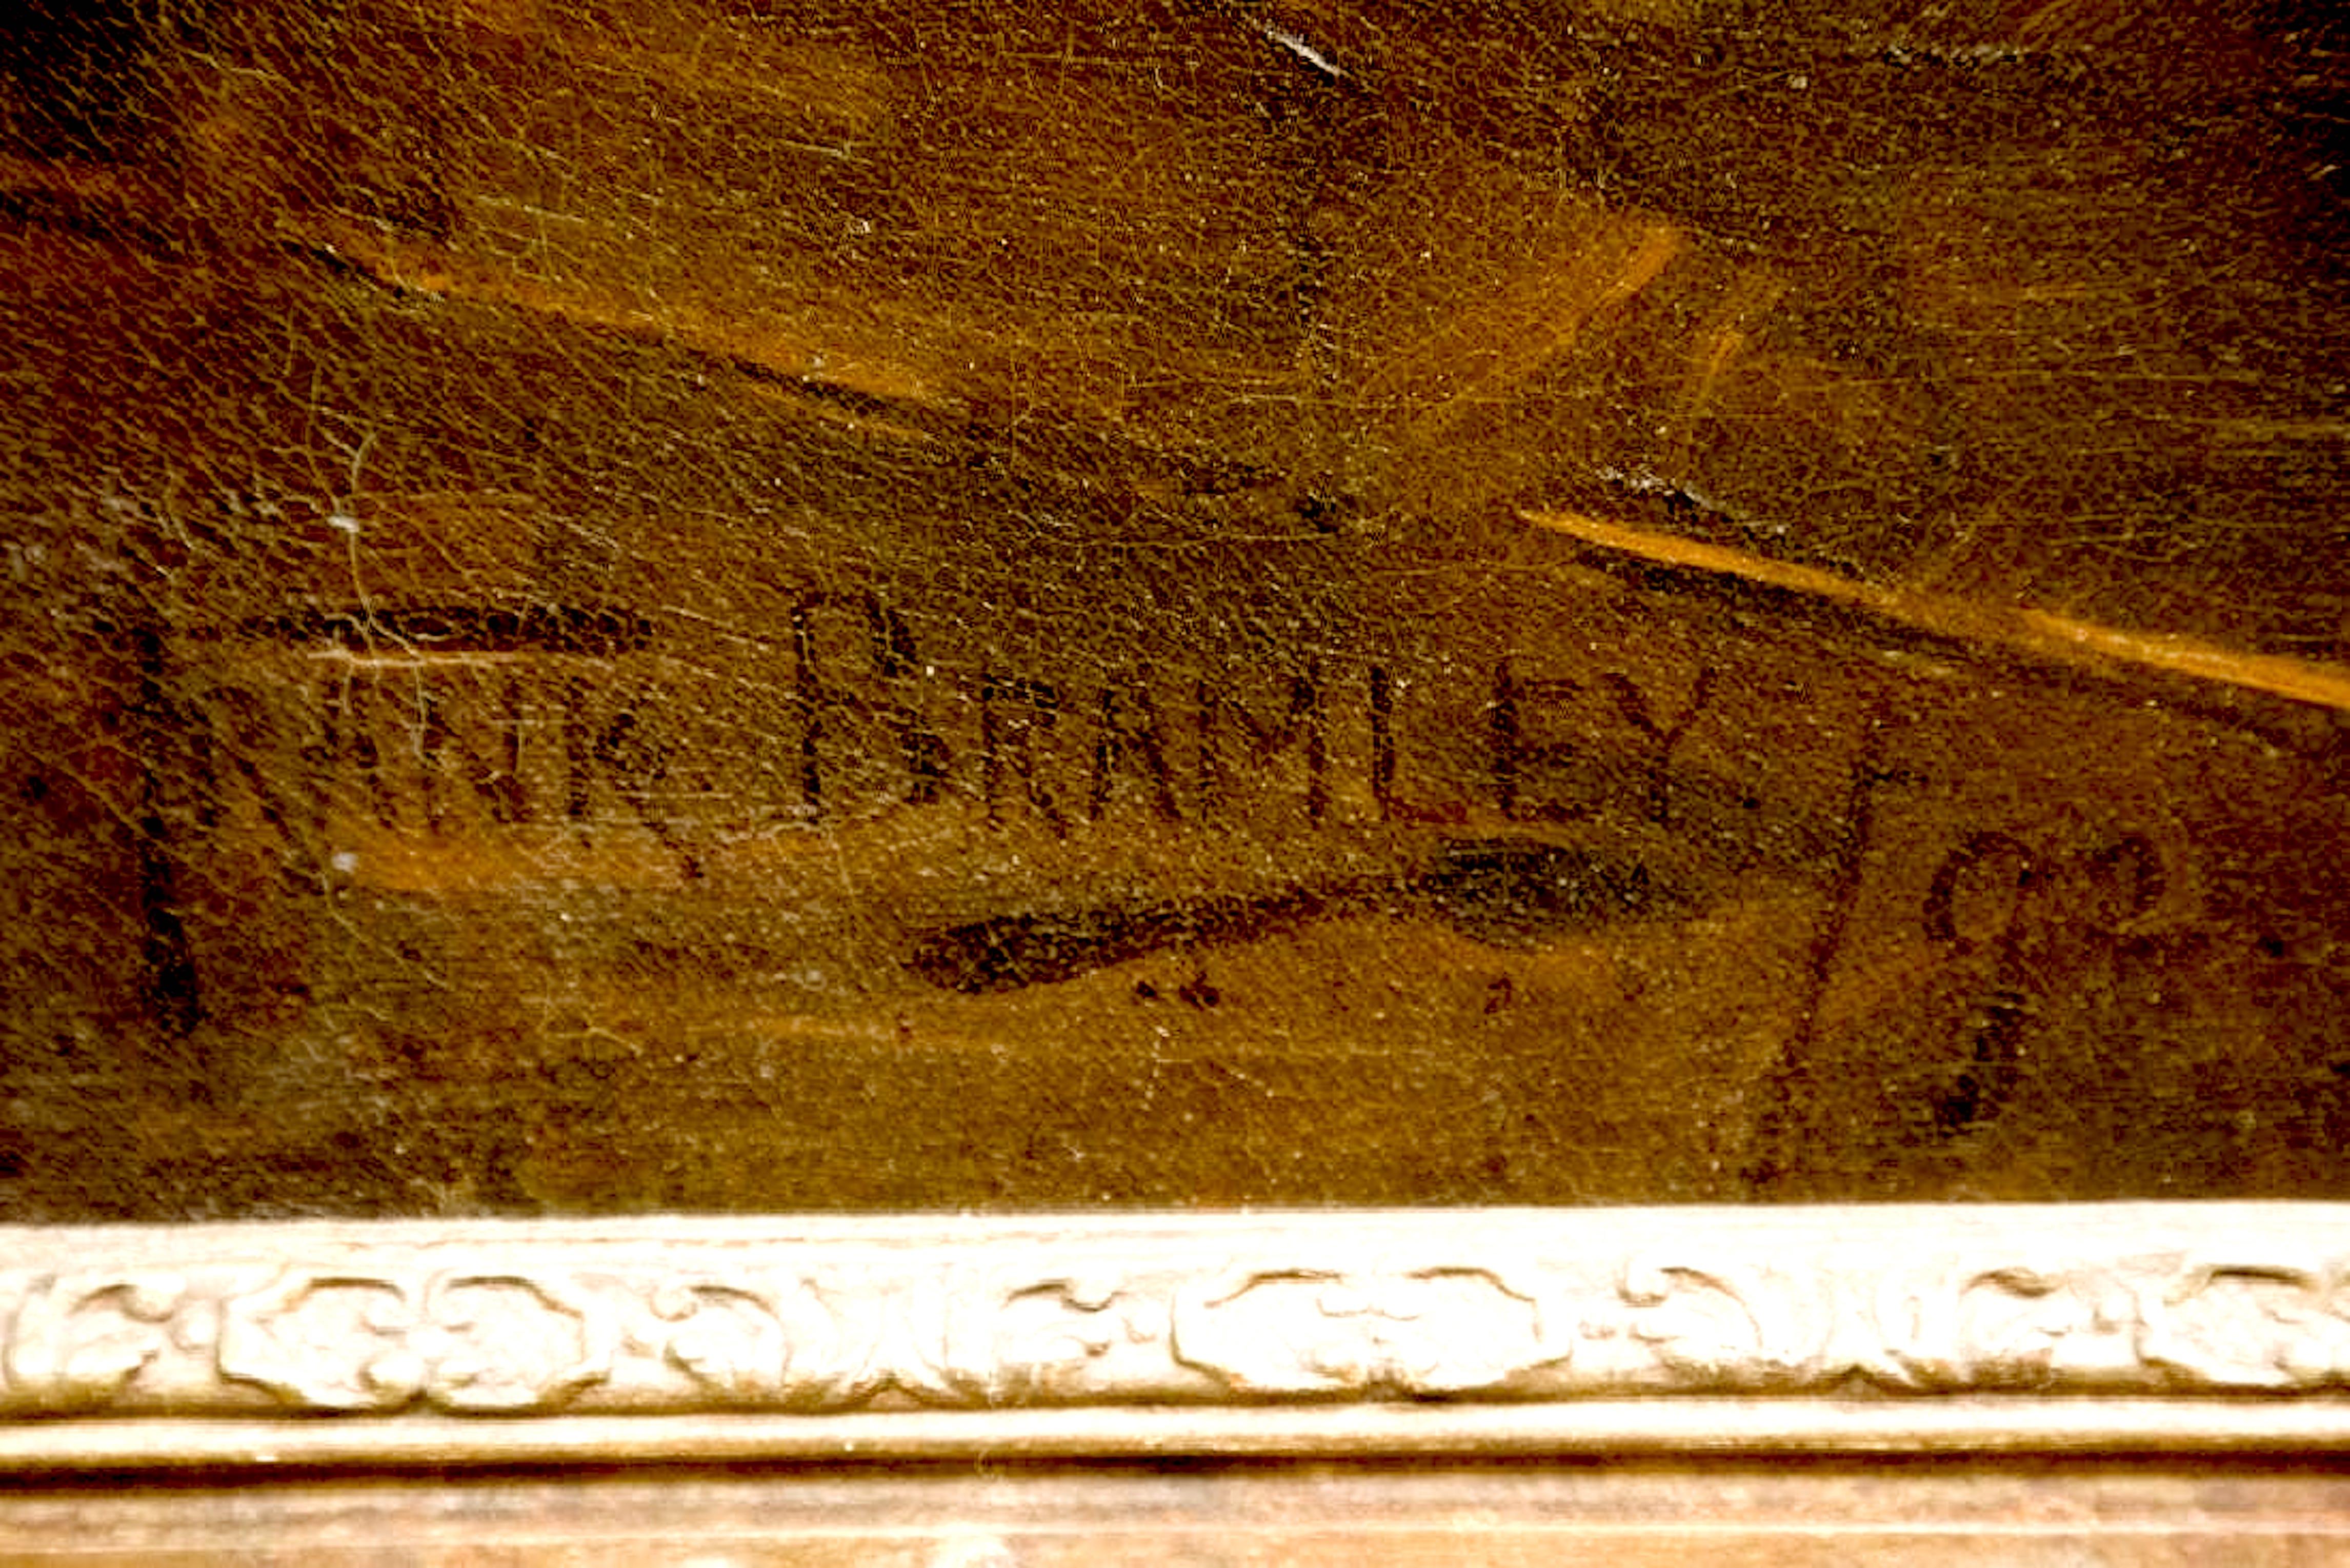 Signiert und datiert 92 unten links. Öl auf Leinwand. Frank Bramley Brite, 1857-1915 Frank Bramley gilt als einer der bedeutendsten Künstler der Newlyn School, einer Gruppe von Künstlern, die sich in den 1880er und 1890er Jahren in Newlyn, Cornwall,